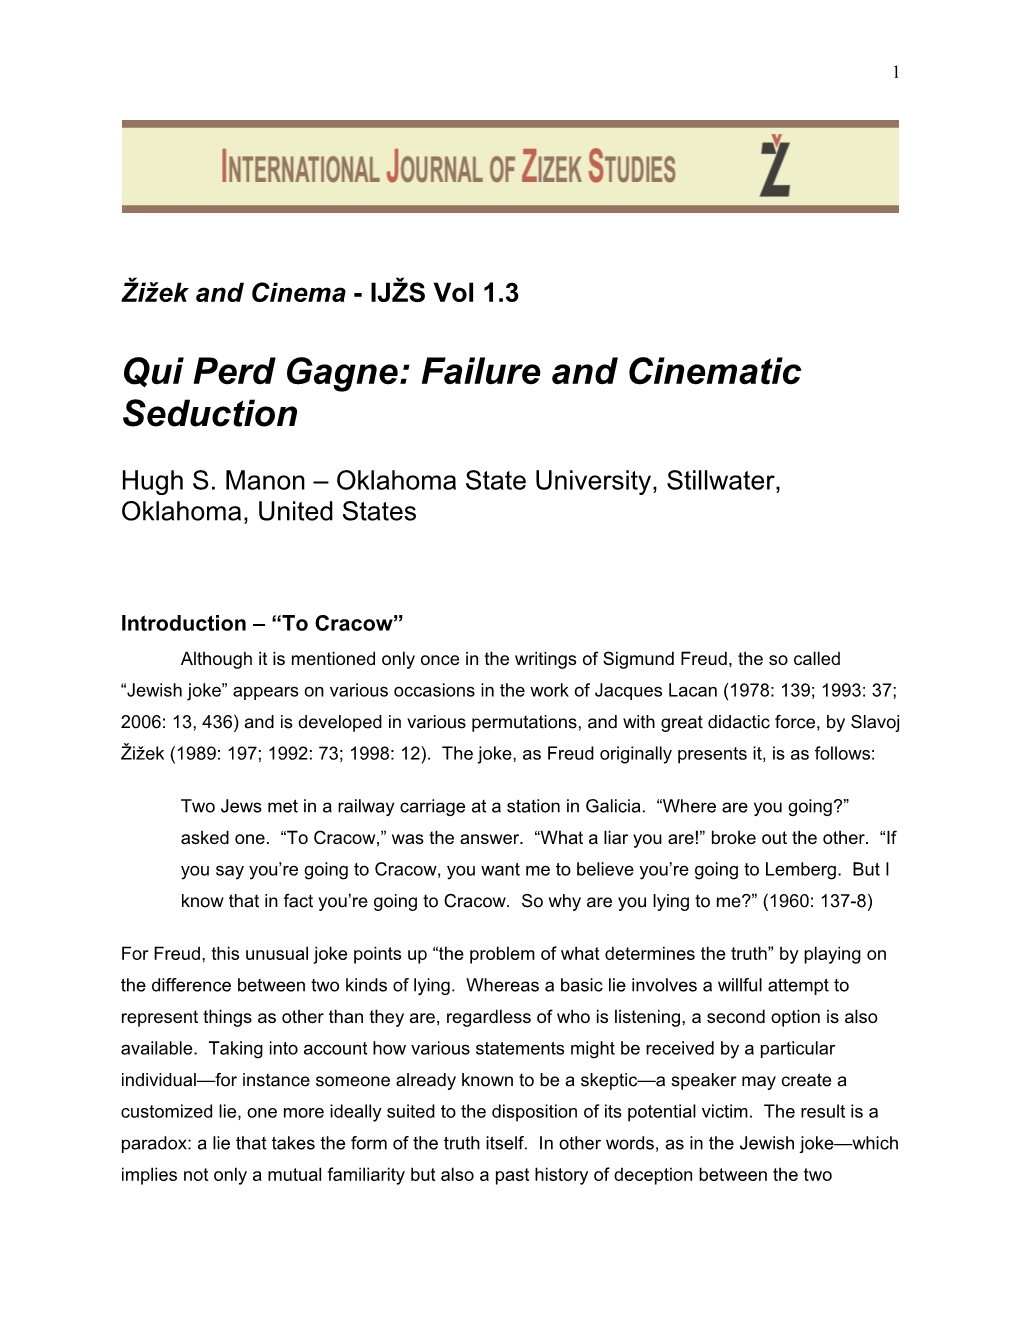 Qui Perd Gagne: Failure and Cinematic Seduction